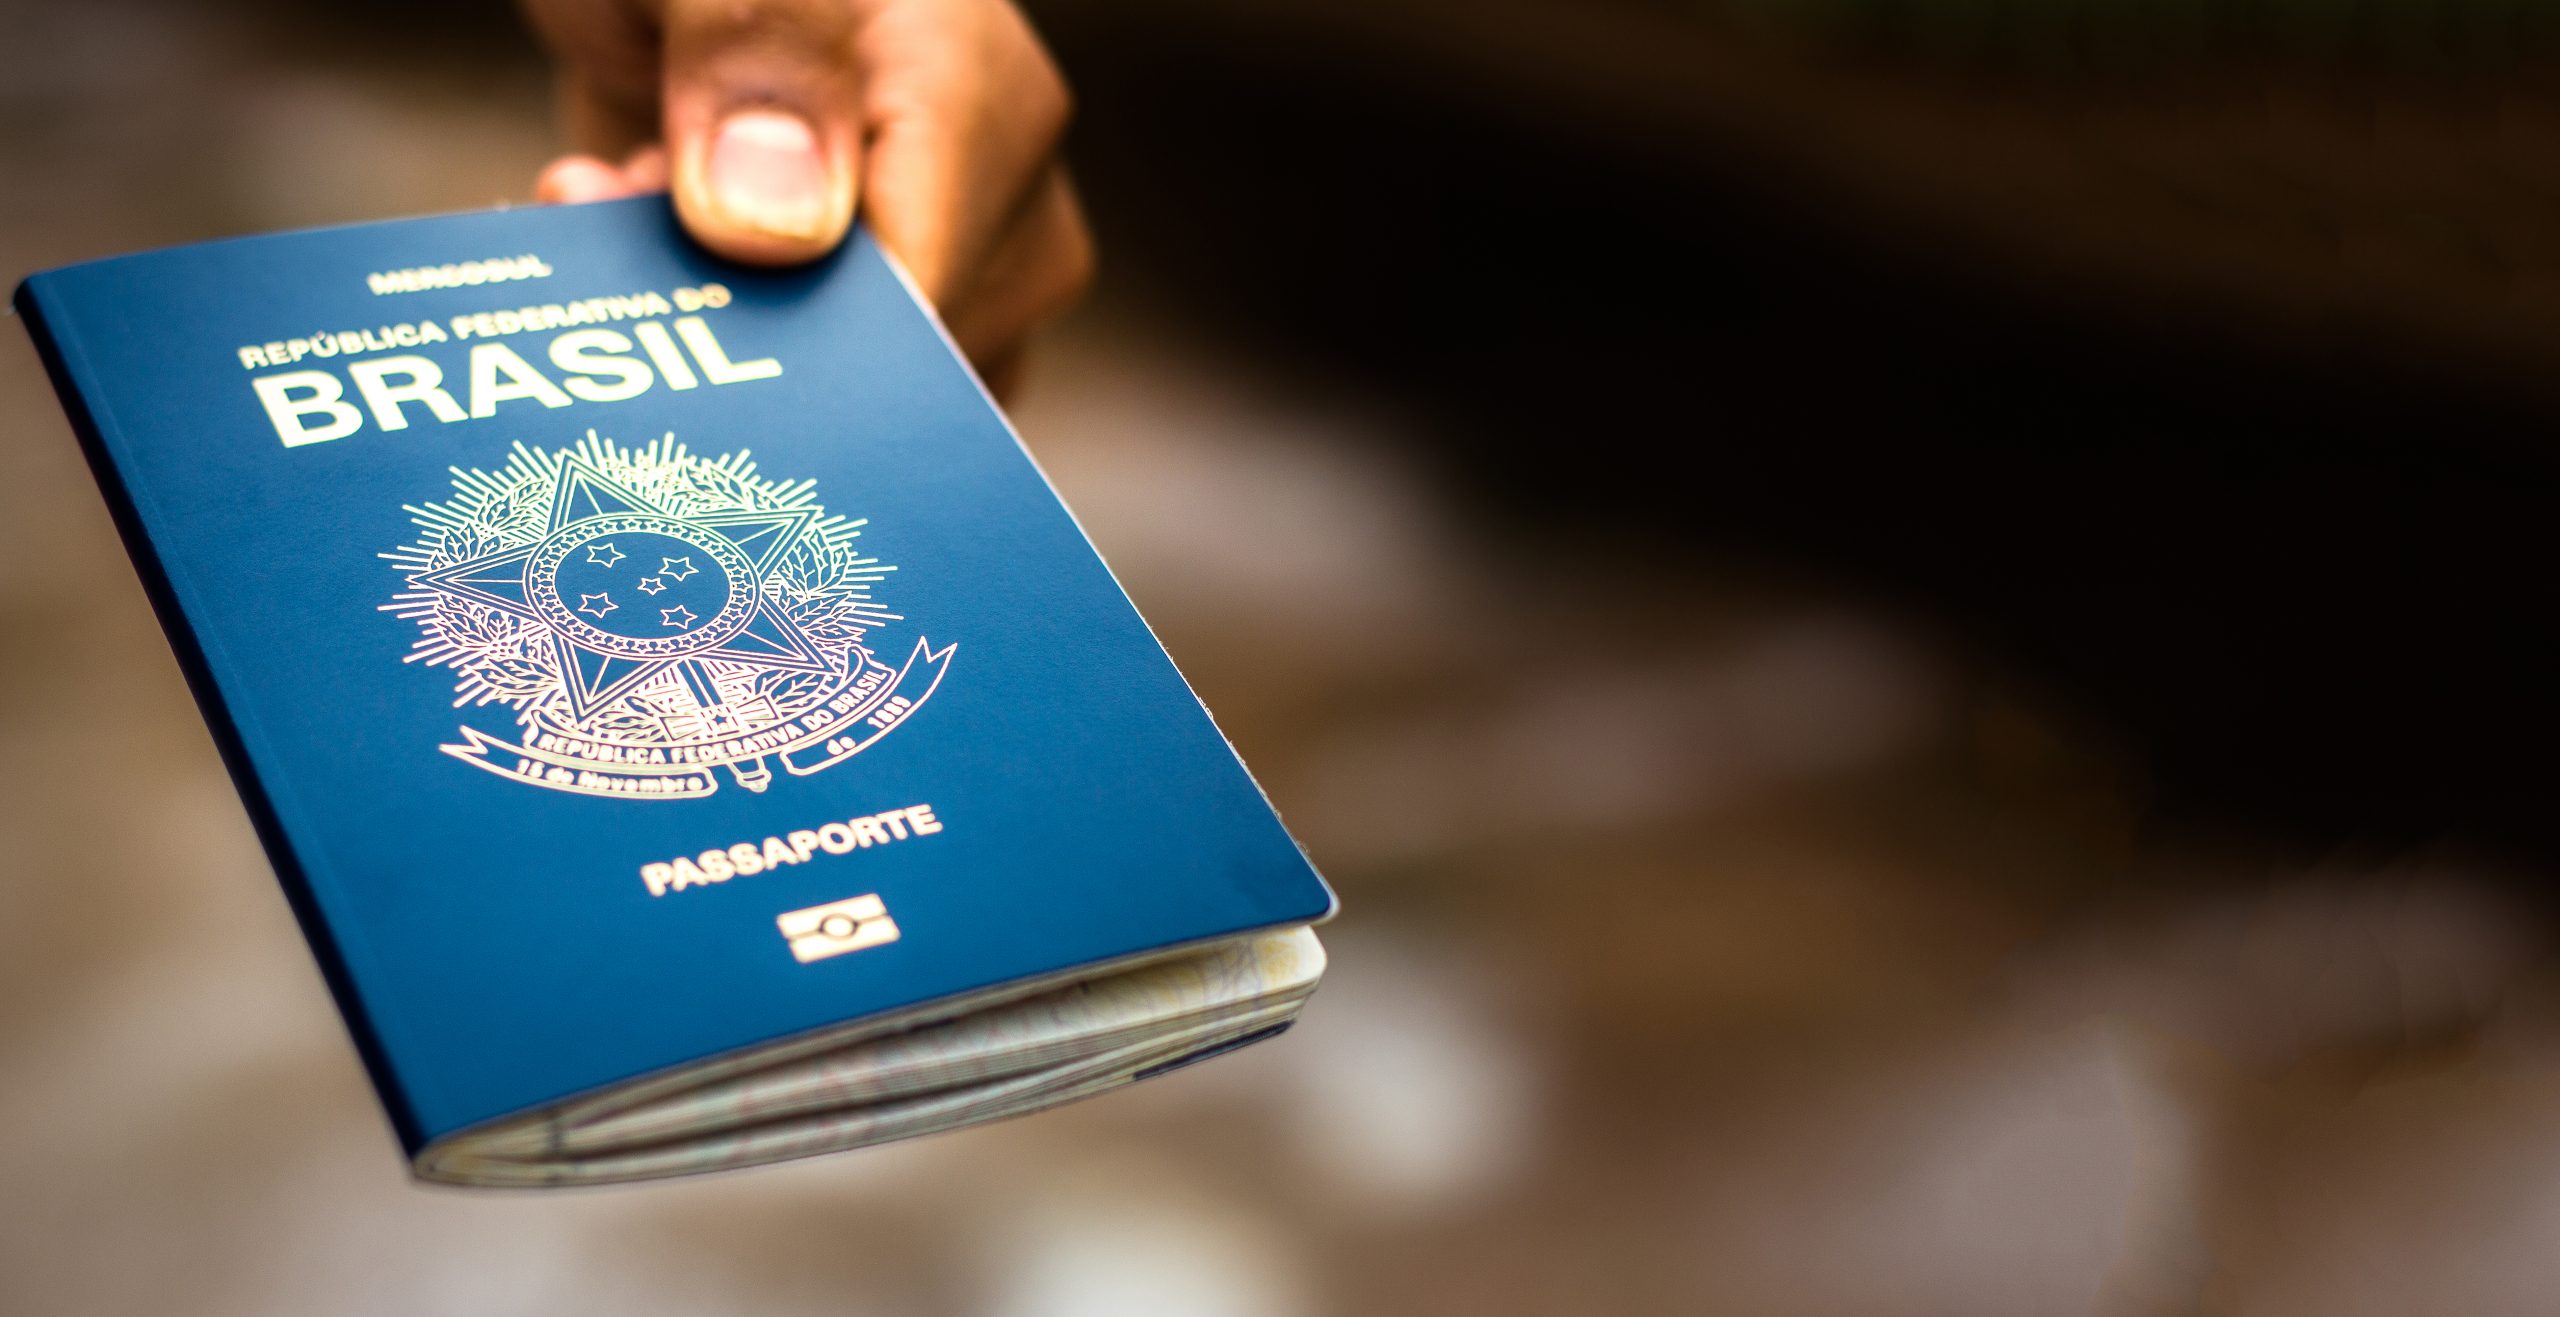 Novo passaporte brasileiro: tudo o que você precisa saber sobre o documento